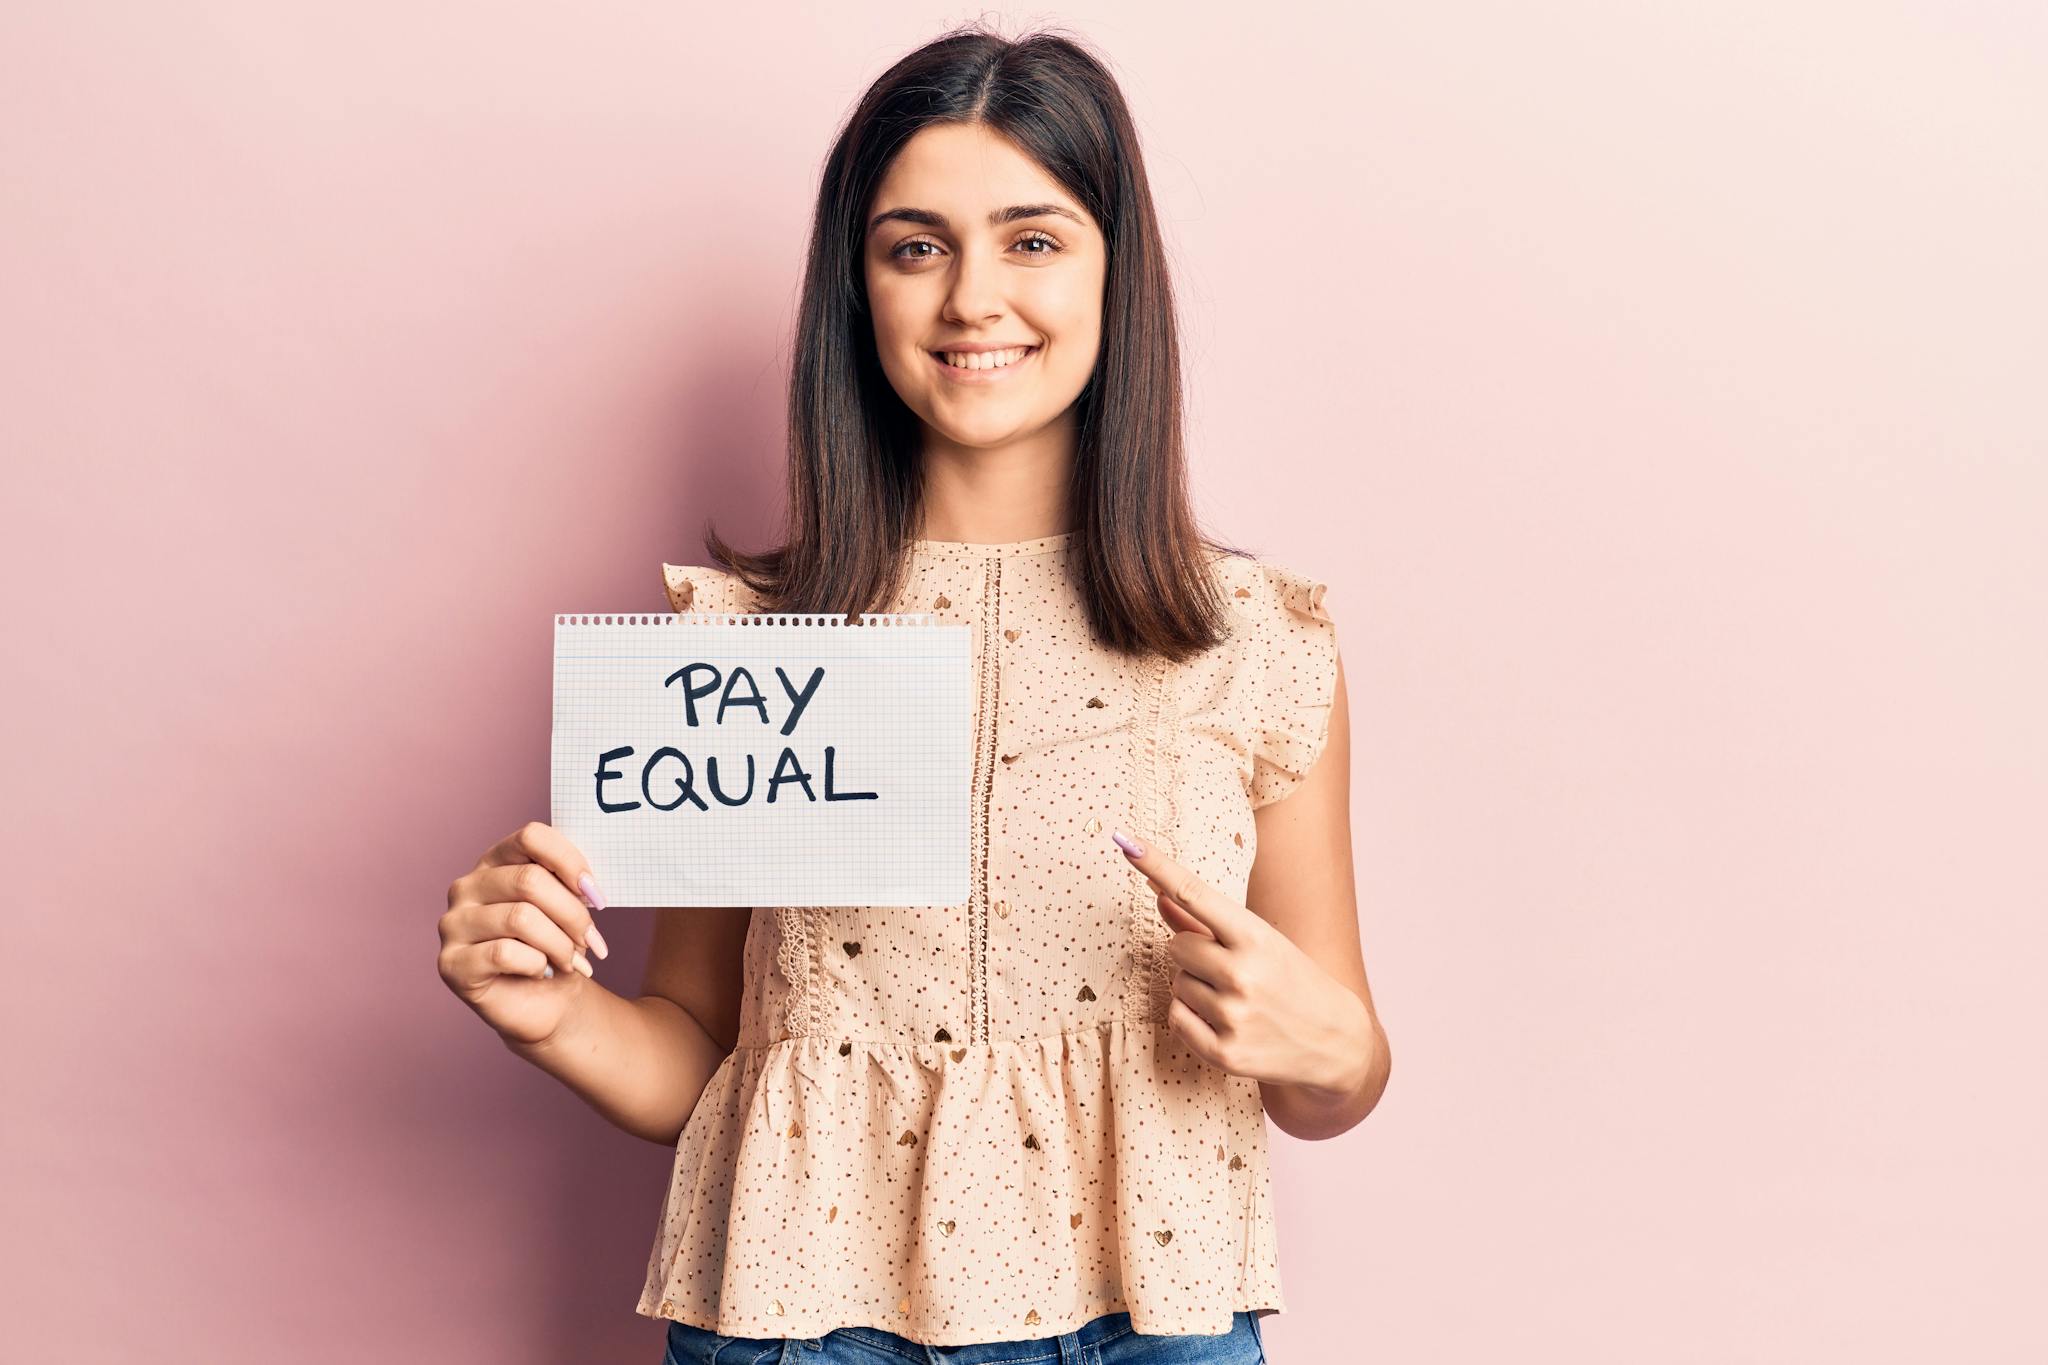 Frau hält Schild nach mit der Aufschrift "Pay Equal" nach oben